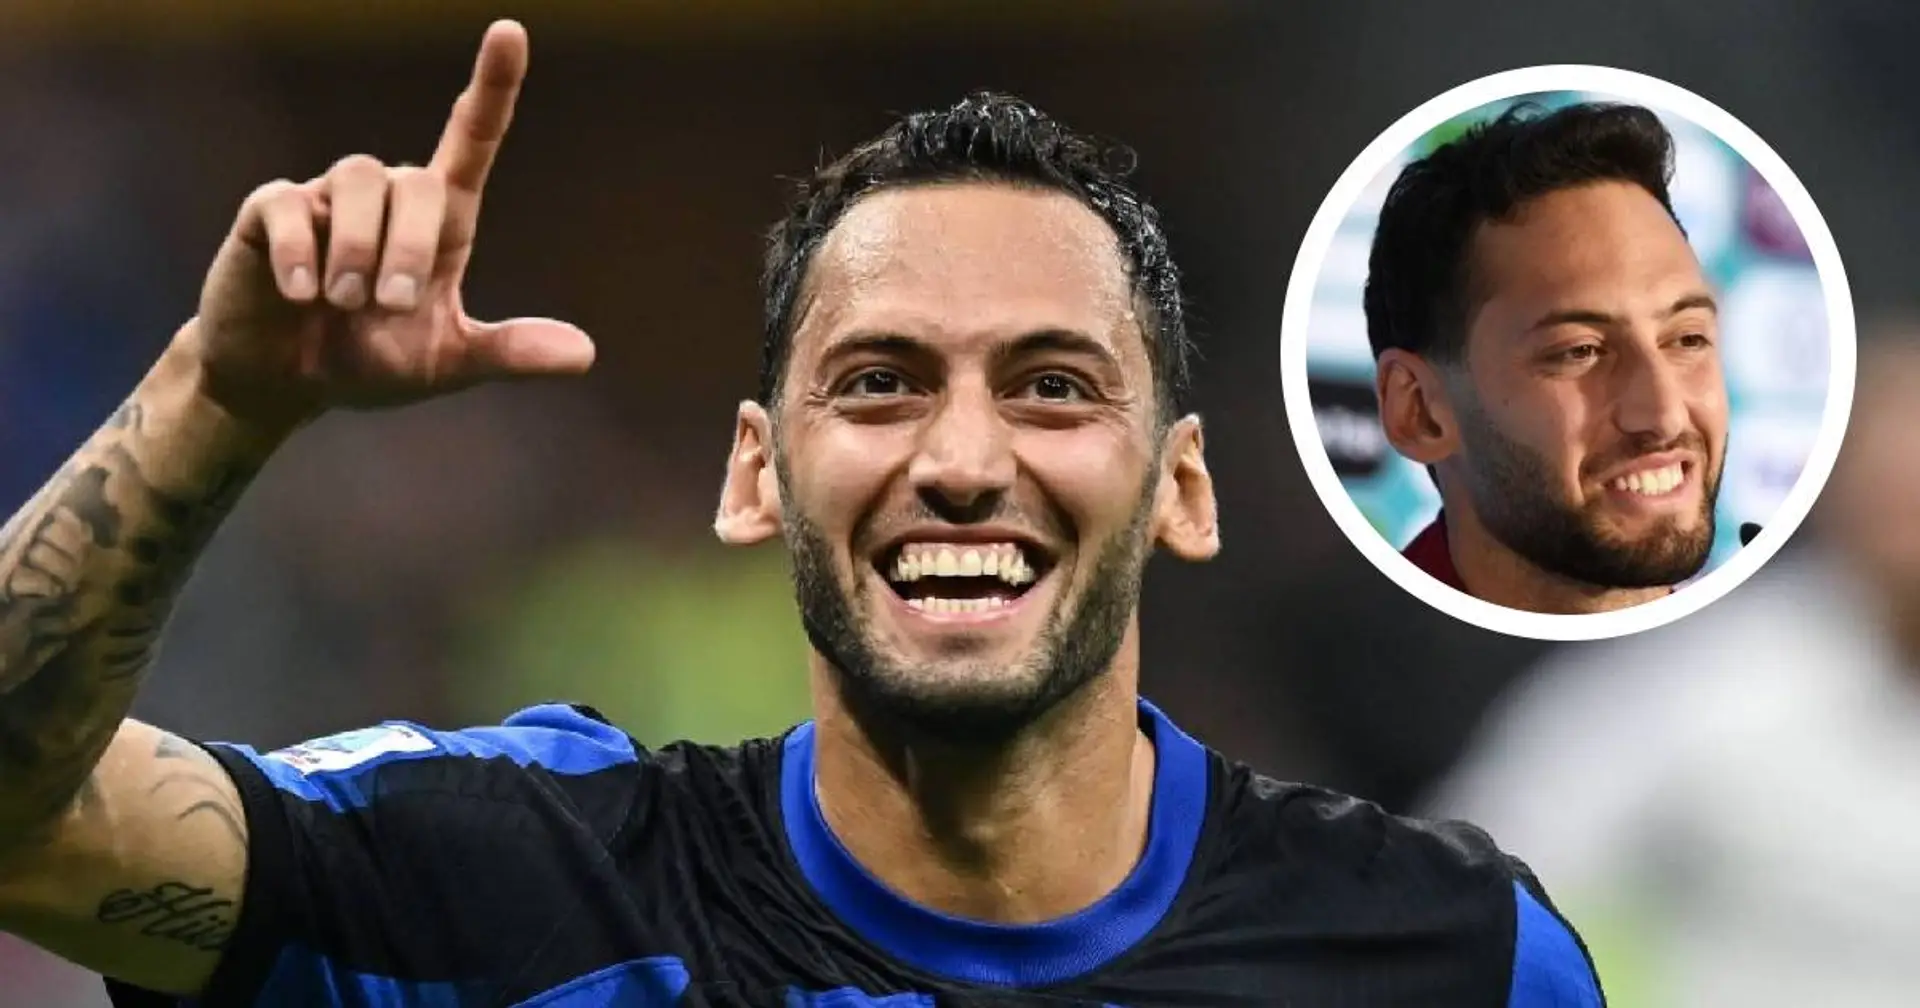 "Manca poco": Calhanoglu si prepara a festeggiare la seconda stella e fa un annuncio sul futuro all'Inter 